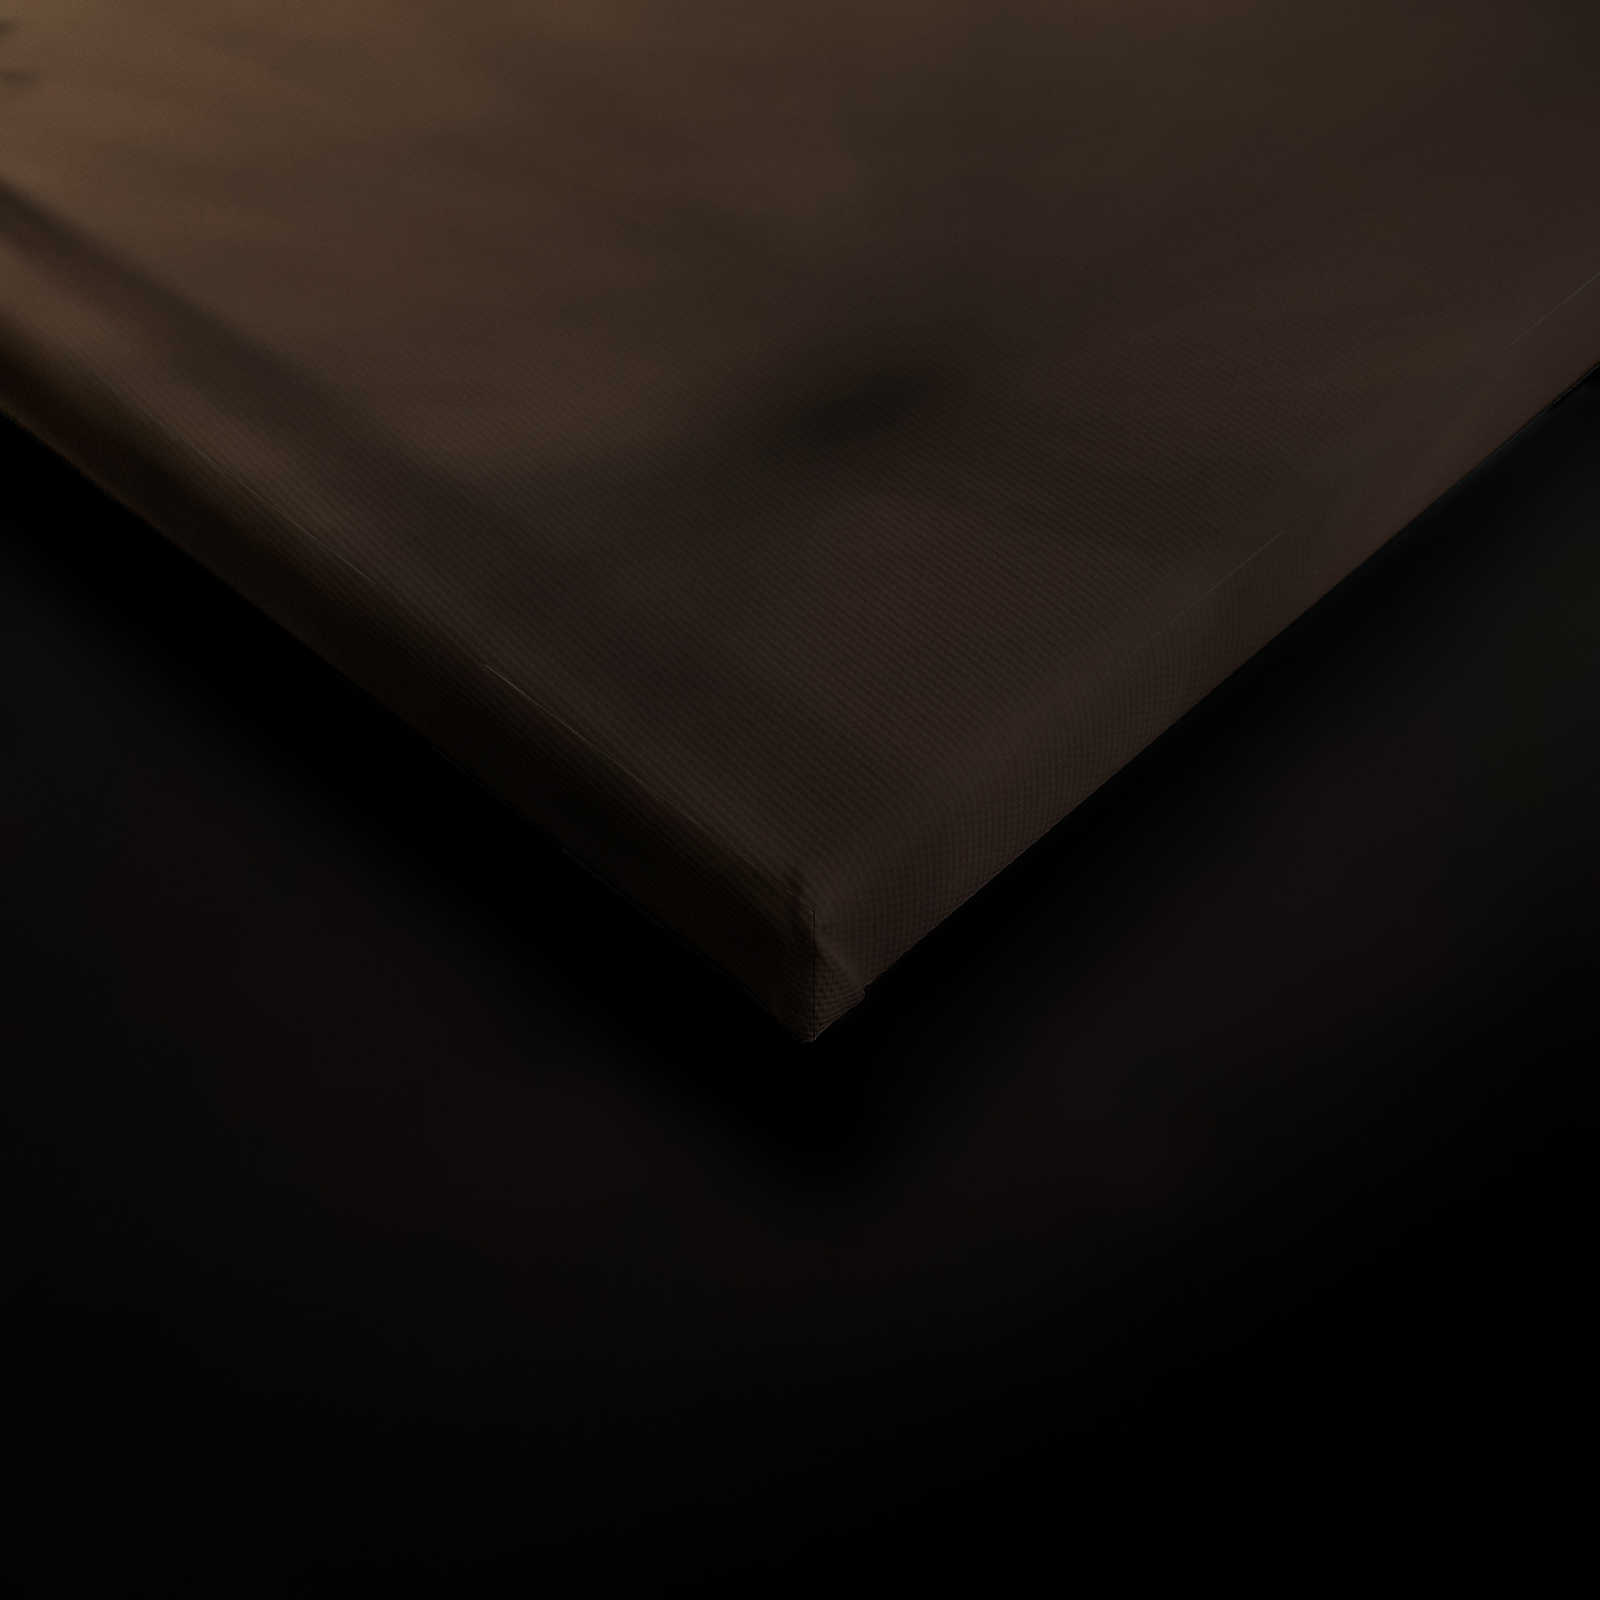             Toile avec pissenlit volant au coucher du soleil - 0,90 m x 0,60 m
        